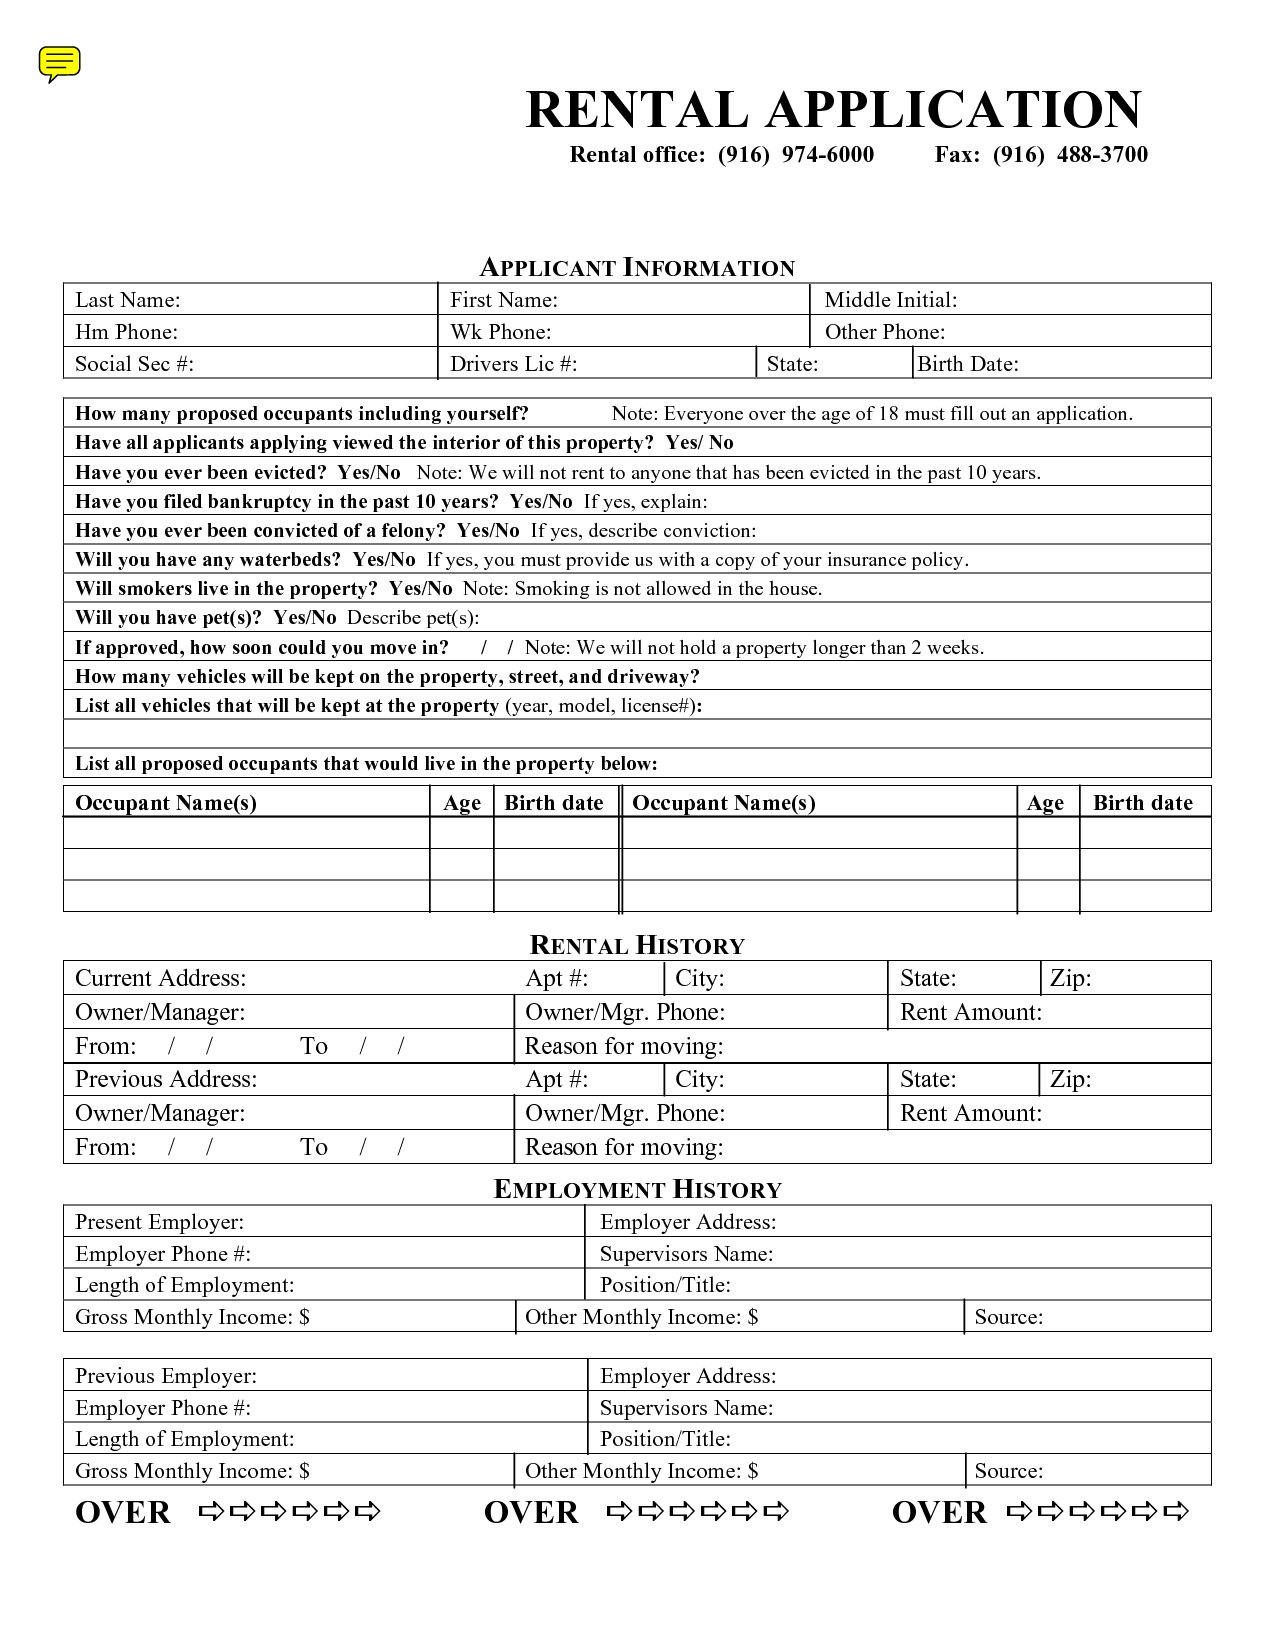 Free Rental Application Formmary_Jmenintigar - House Rental - Free Printable Rental Application